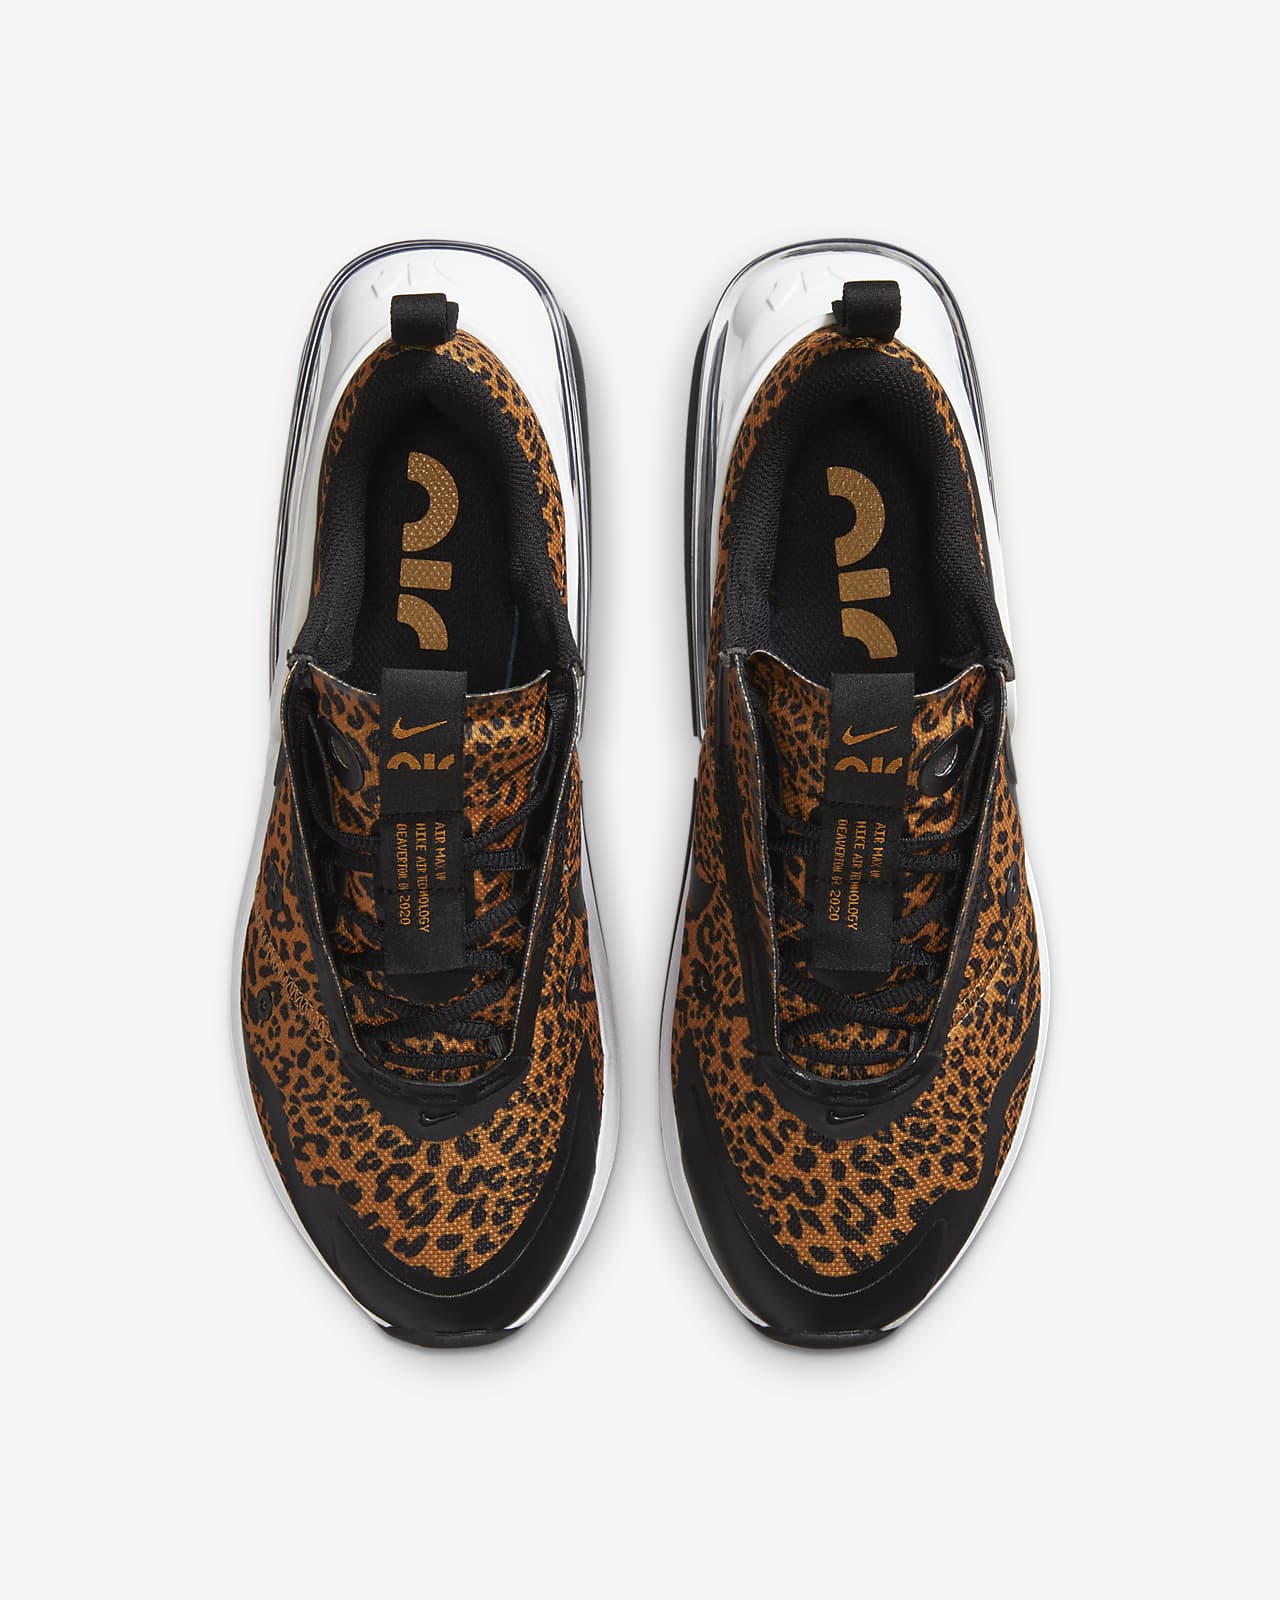 nike leopard shoes women